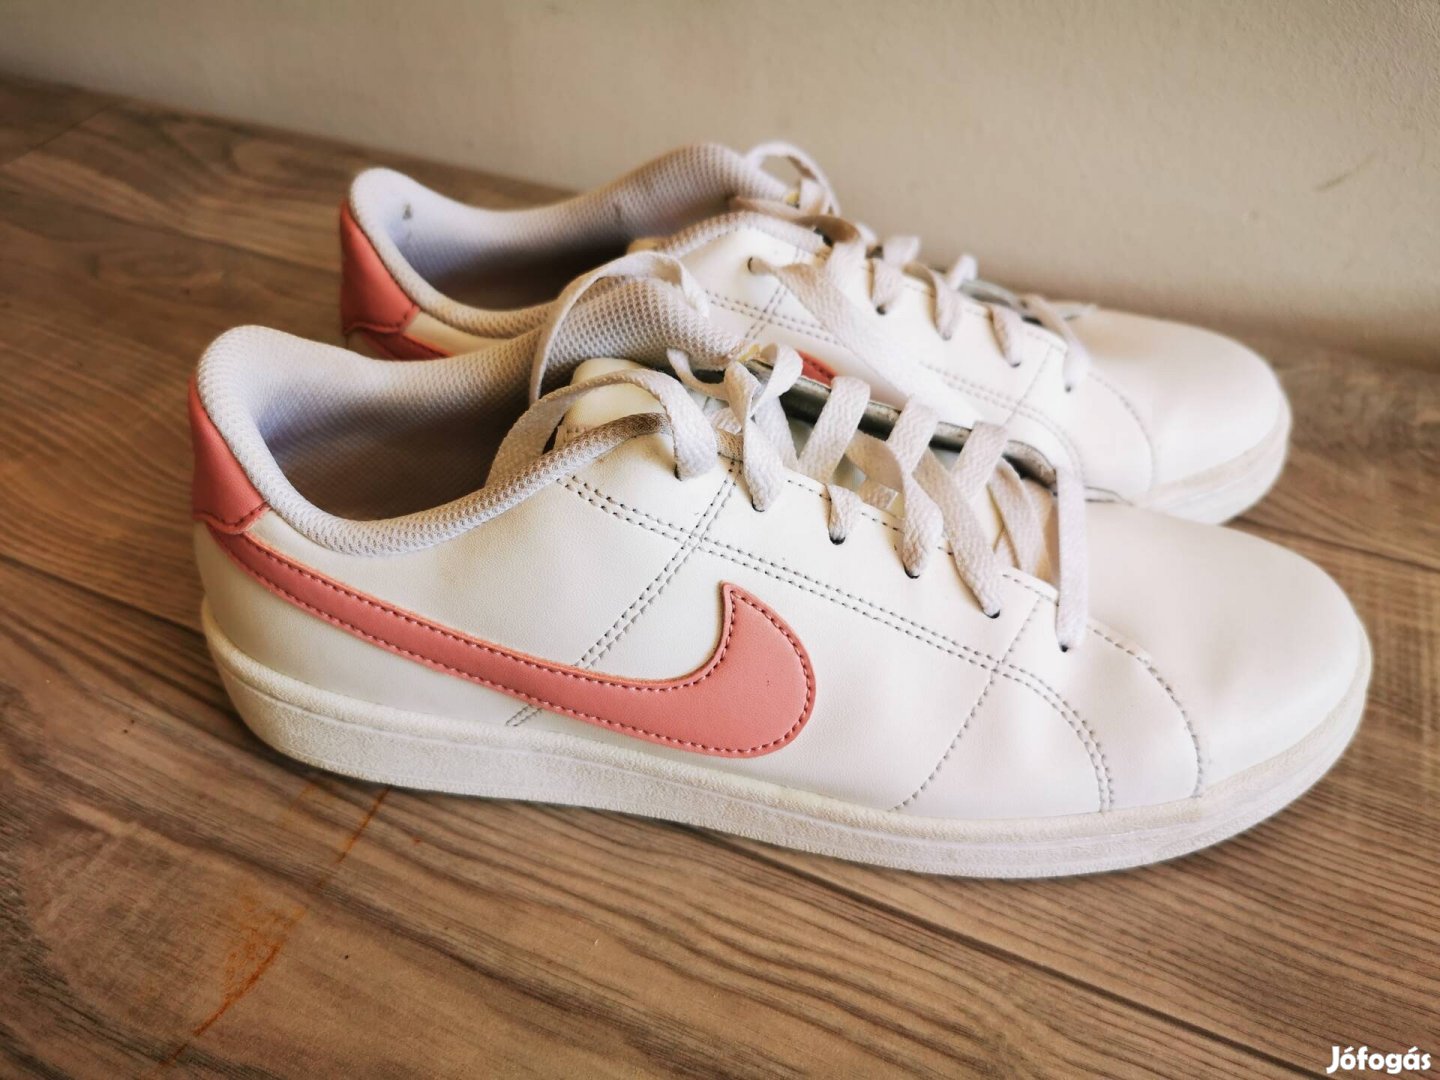 Nike cipő - Court Royale 2 fehér/rózsaszín műbőr sneaker, 40-es méret